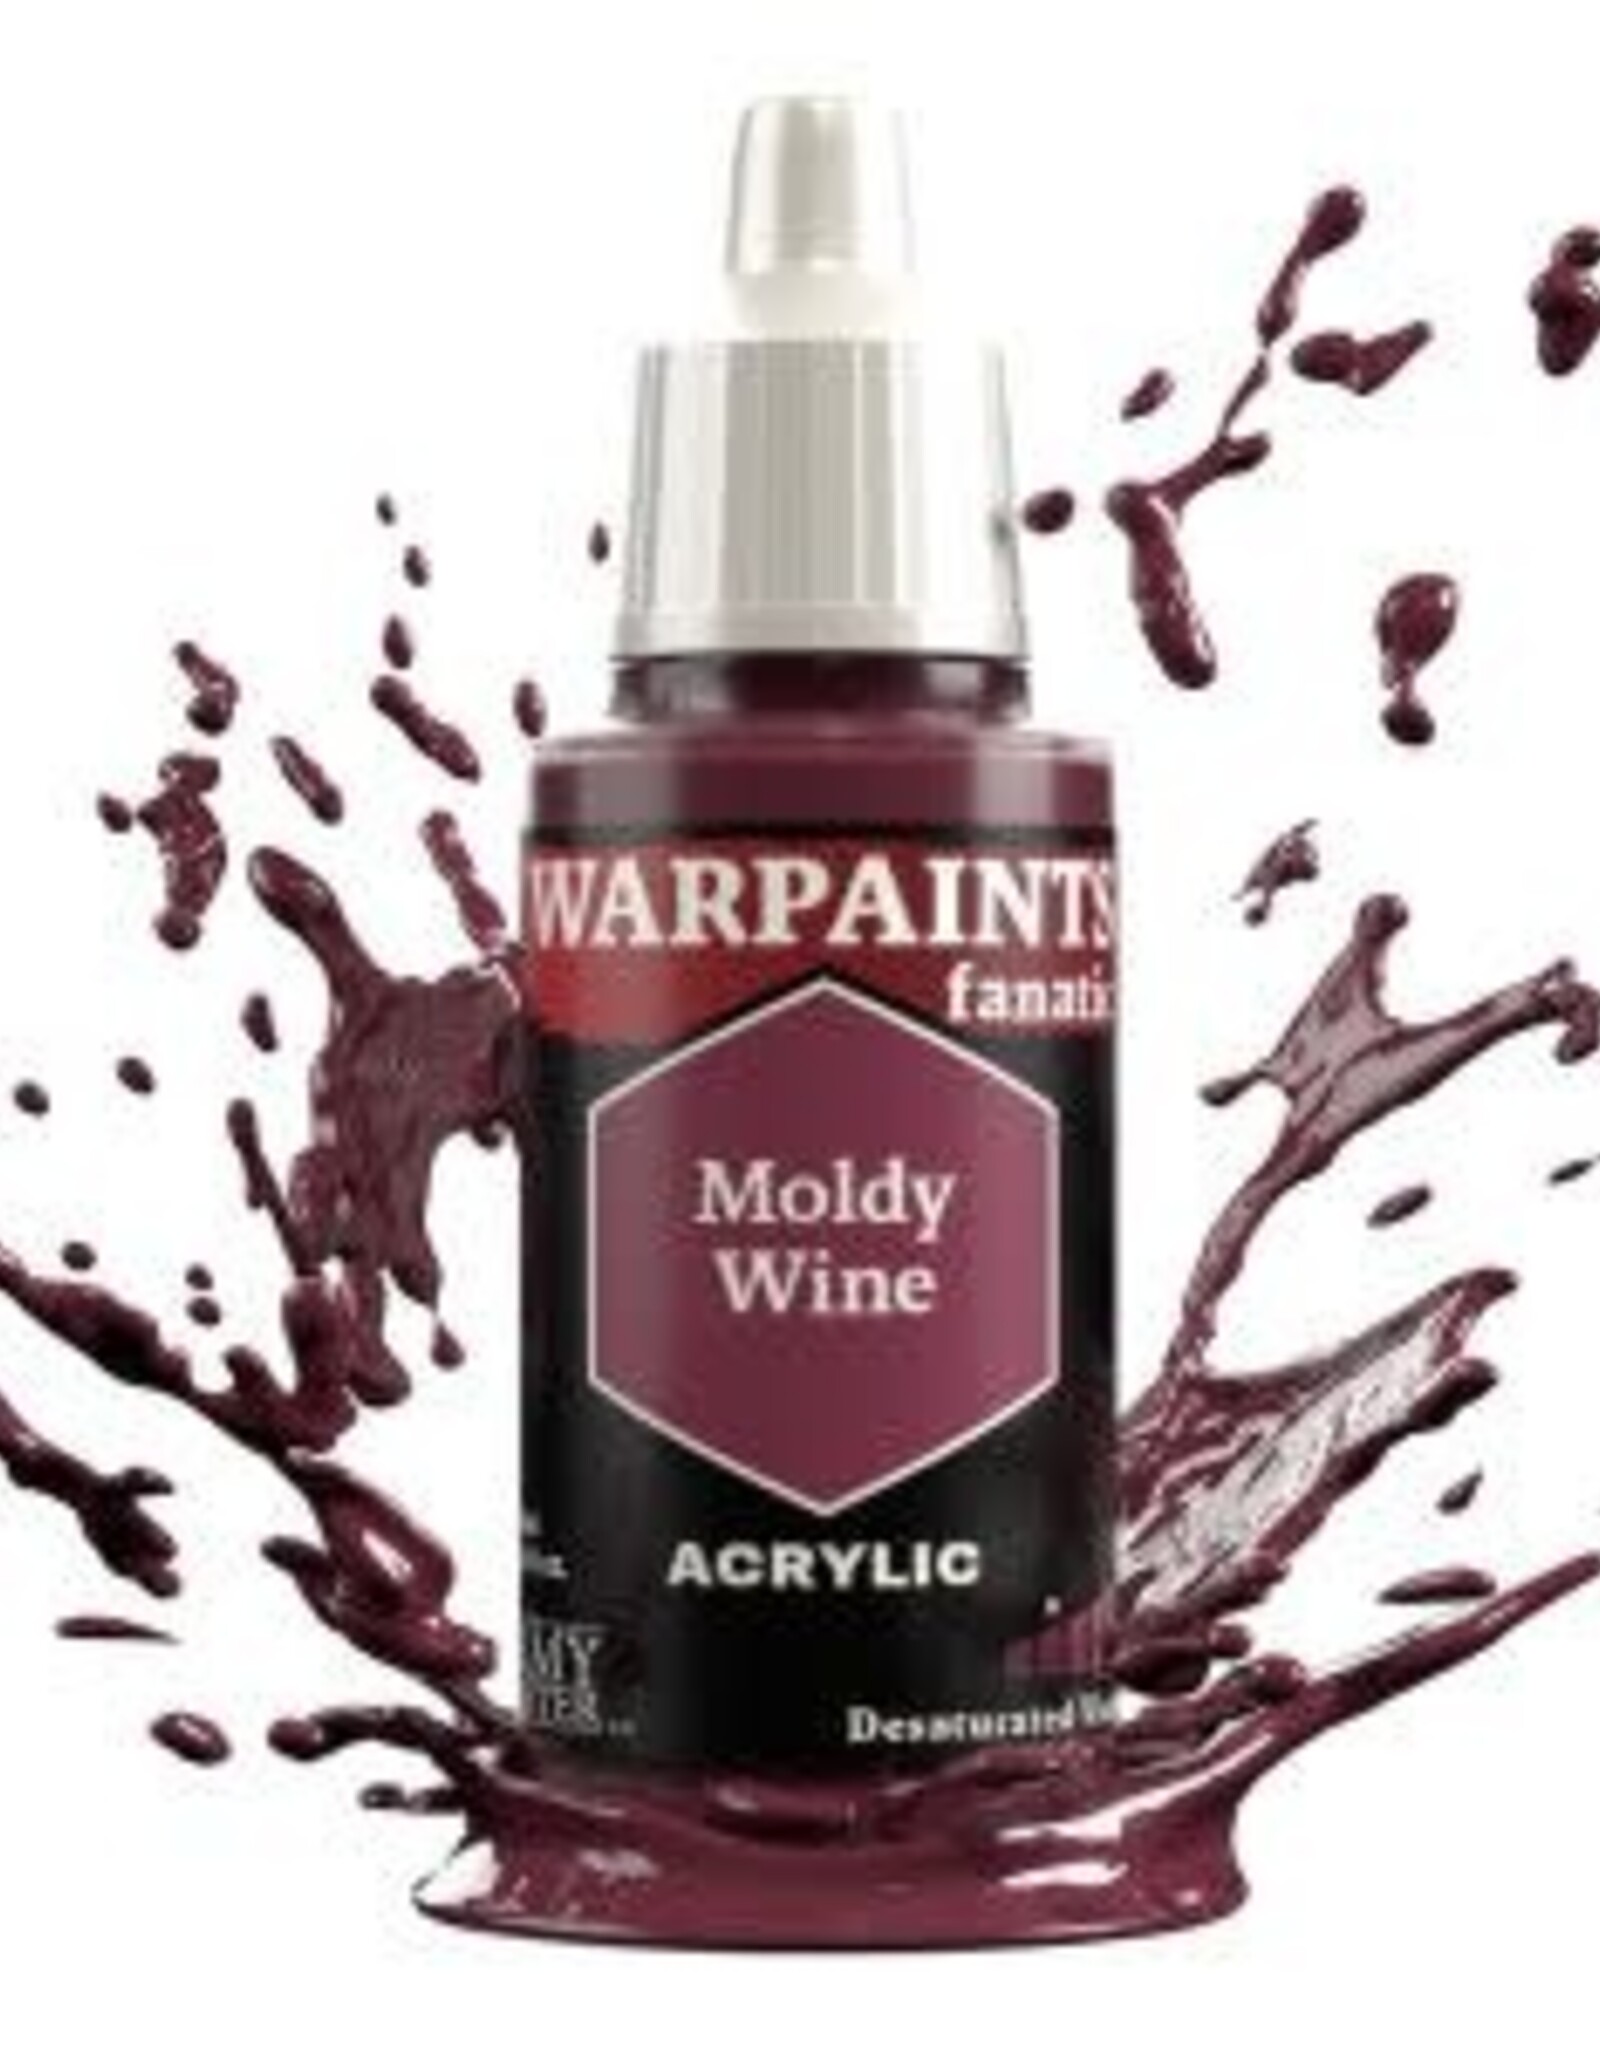 Warpaints Fanatic: Moldy Wine